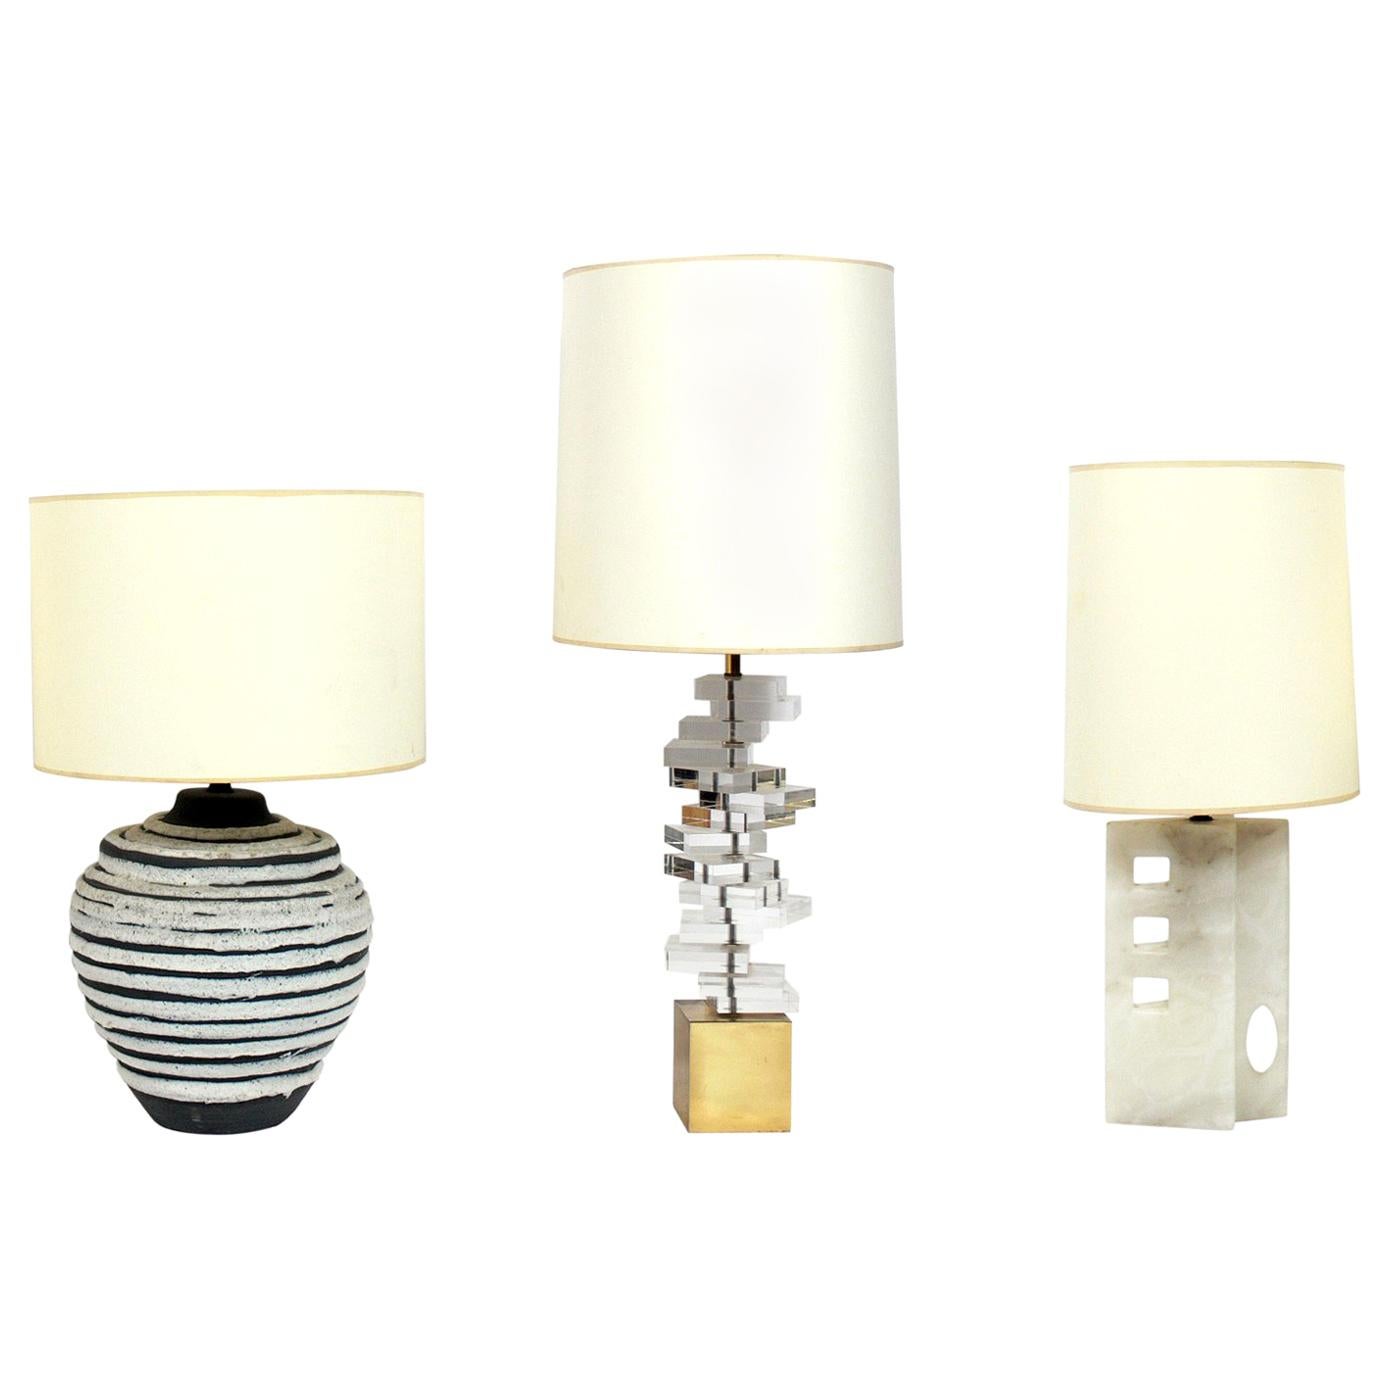 Sélection de lampes italiennes du milieu du siècle, vers les années 1950-1960. De gauche à droite, il s'agit de
1) Lampe en céramique émaillée Lava, vers les années 1960. Elle mesure 31